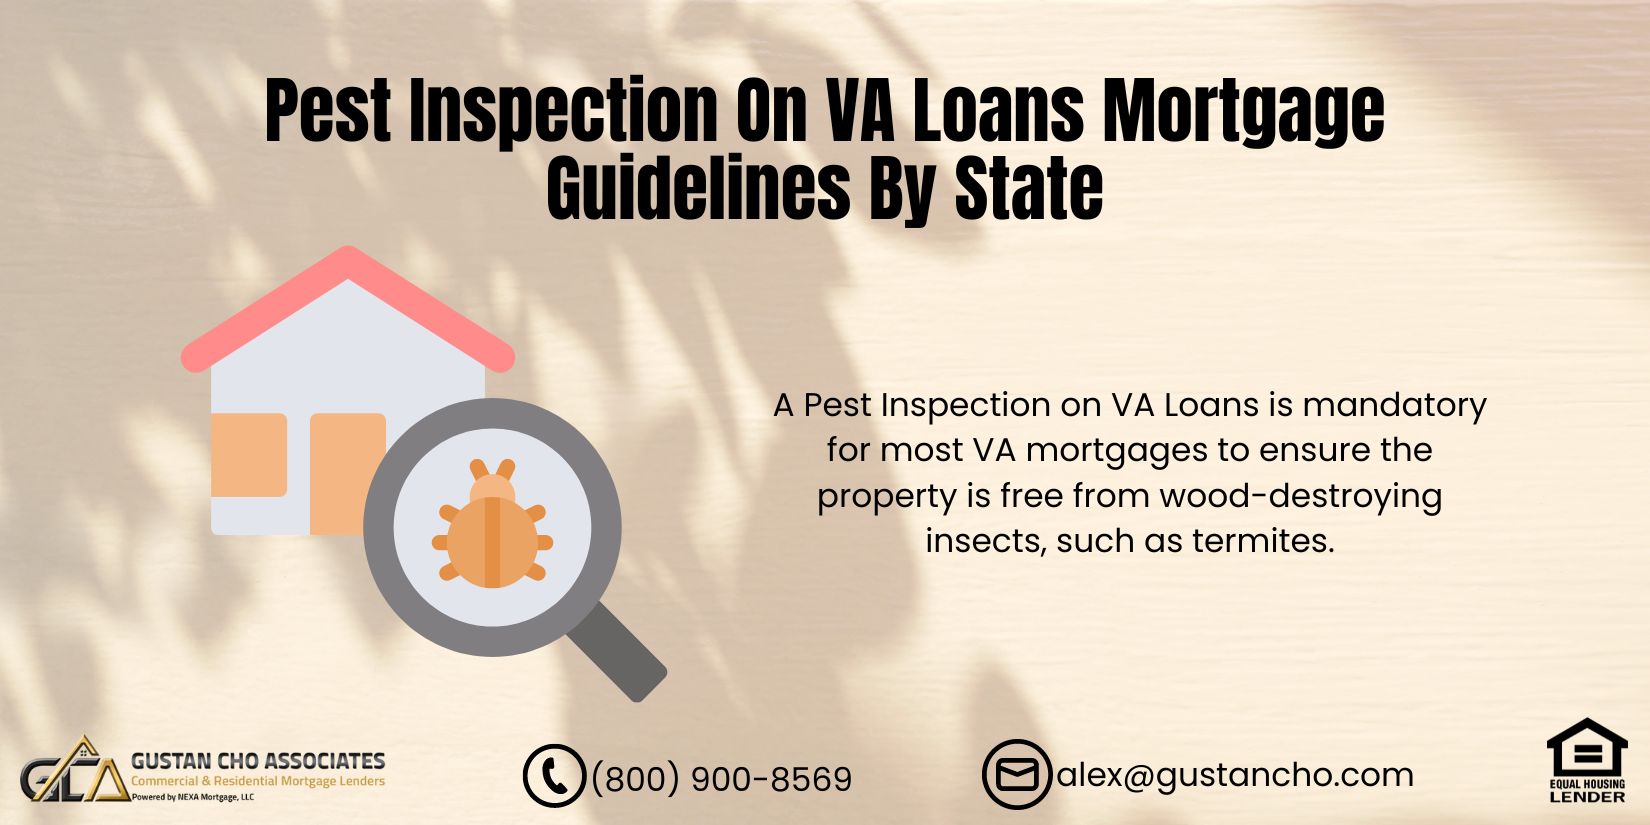 Pest Inspection On VA Loans